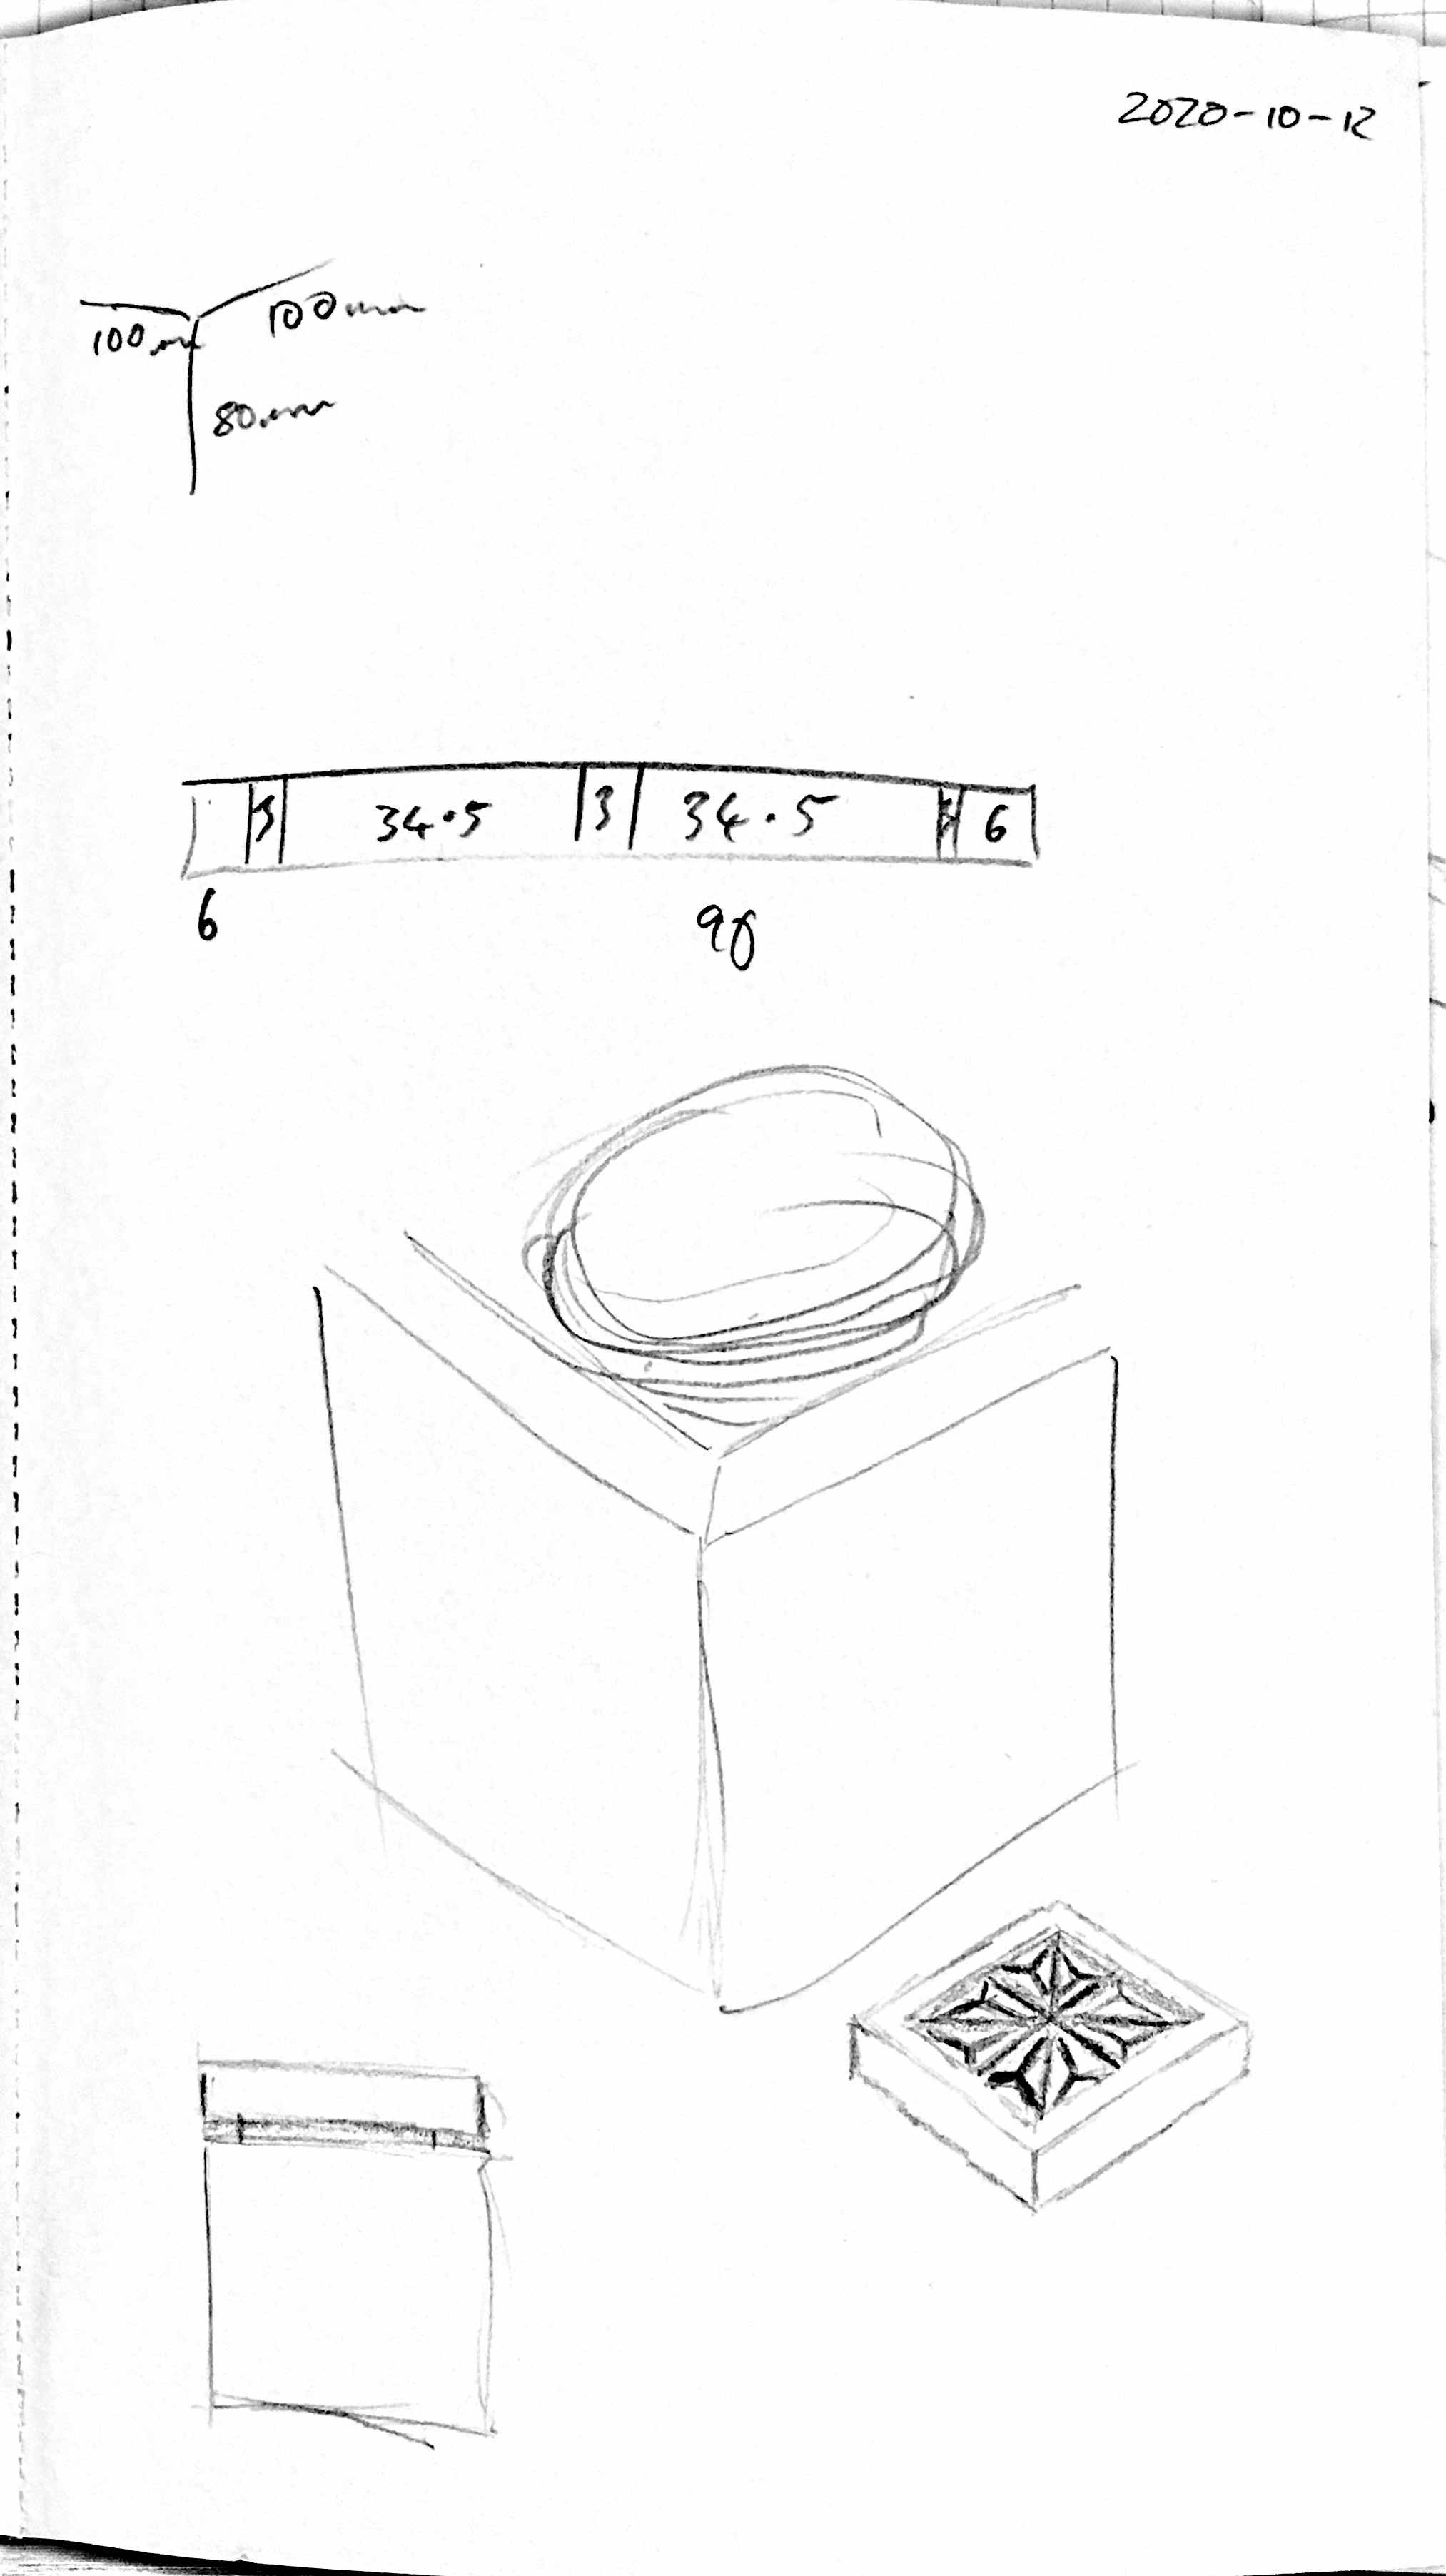 Initial sketch of kumiko box